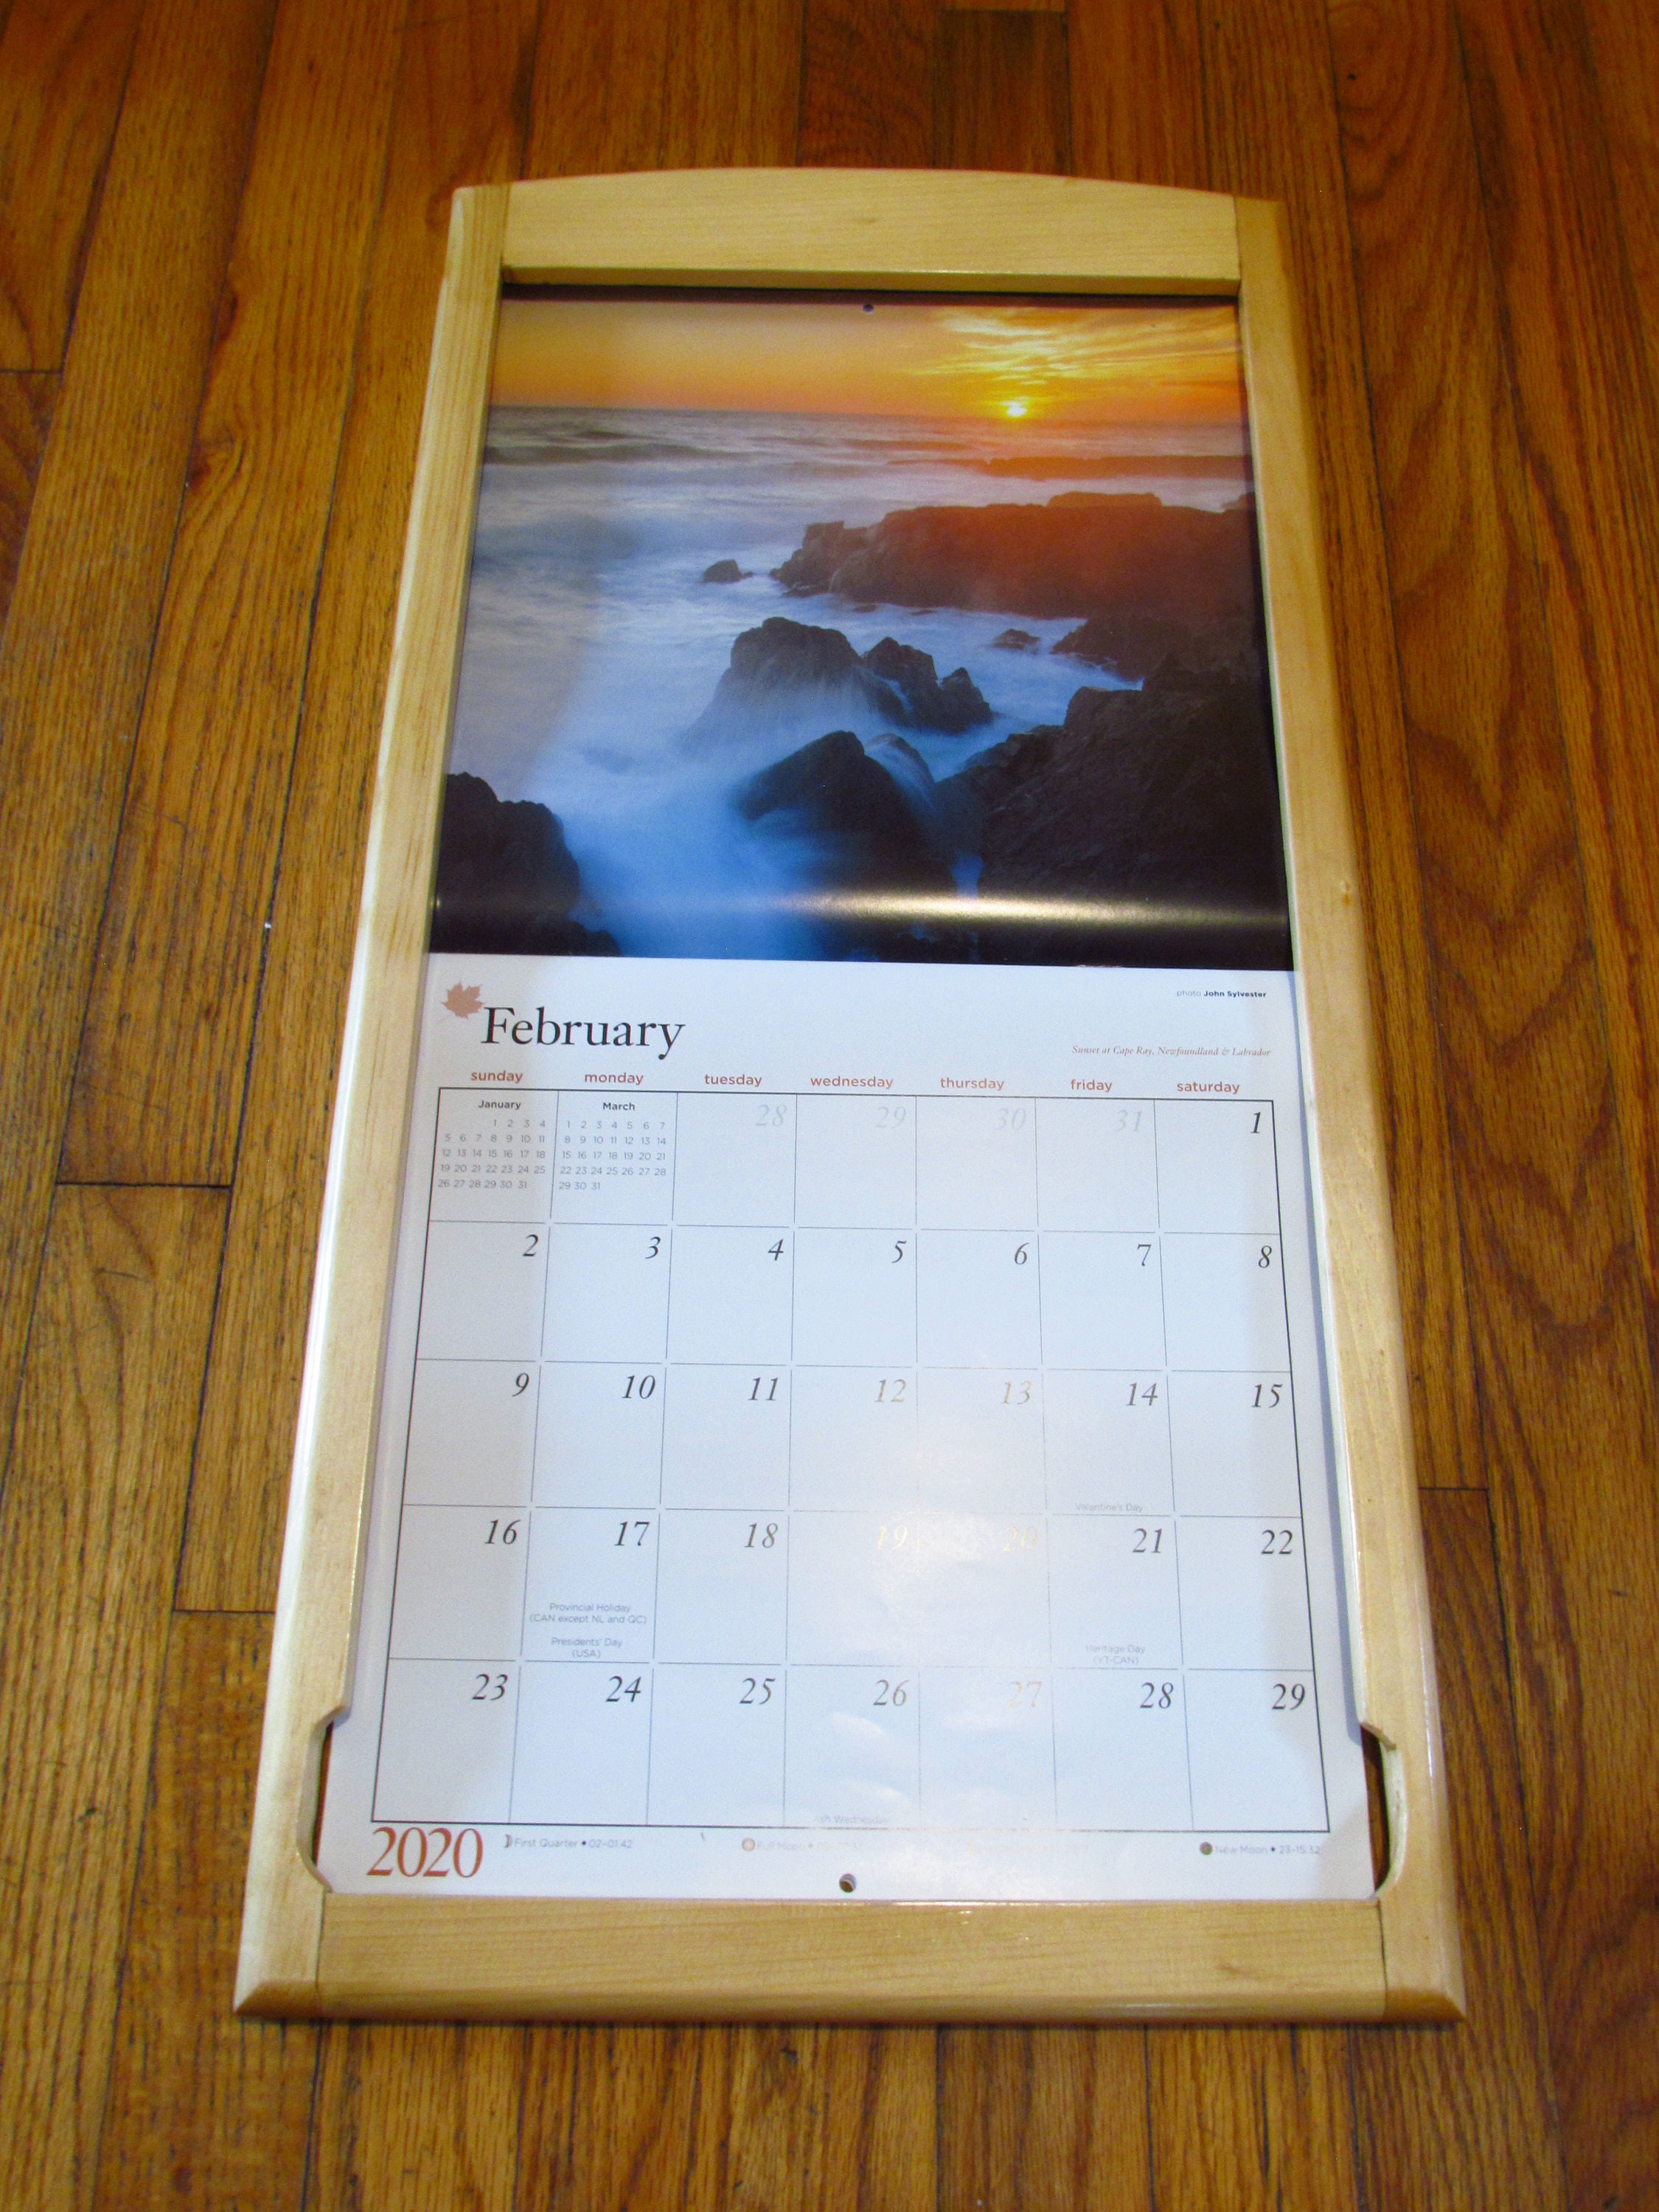 Calendar holder FRONT LOAD solid wood pine calendar frame Etsy